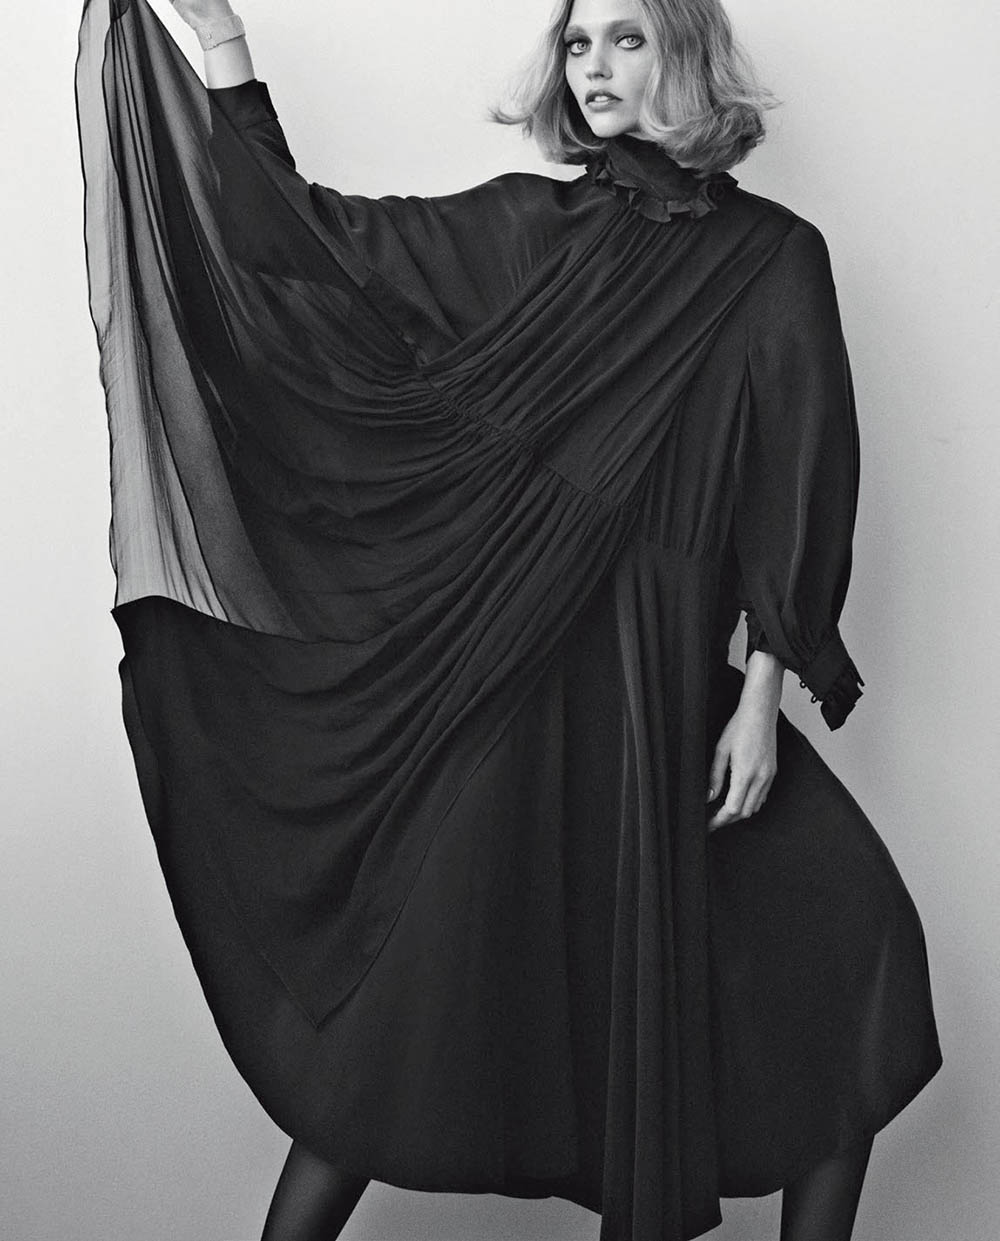 Sasha Pivovarova by Dario Catellani for Vogue Italia November 2018